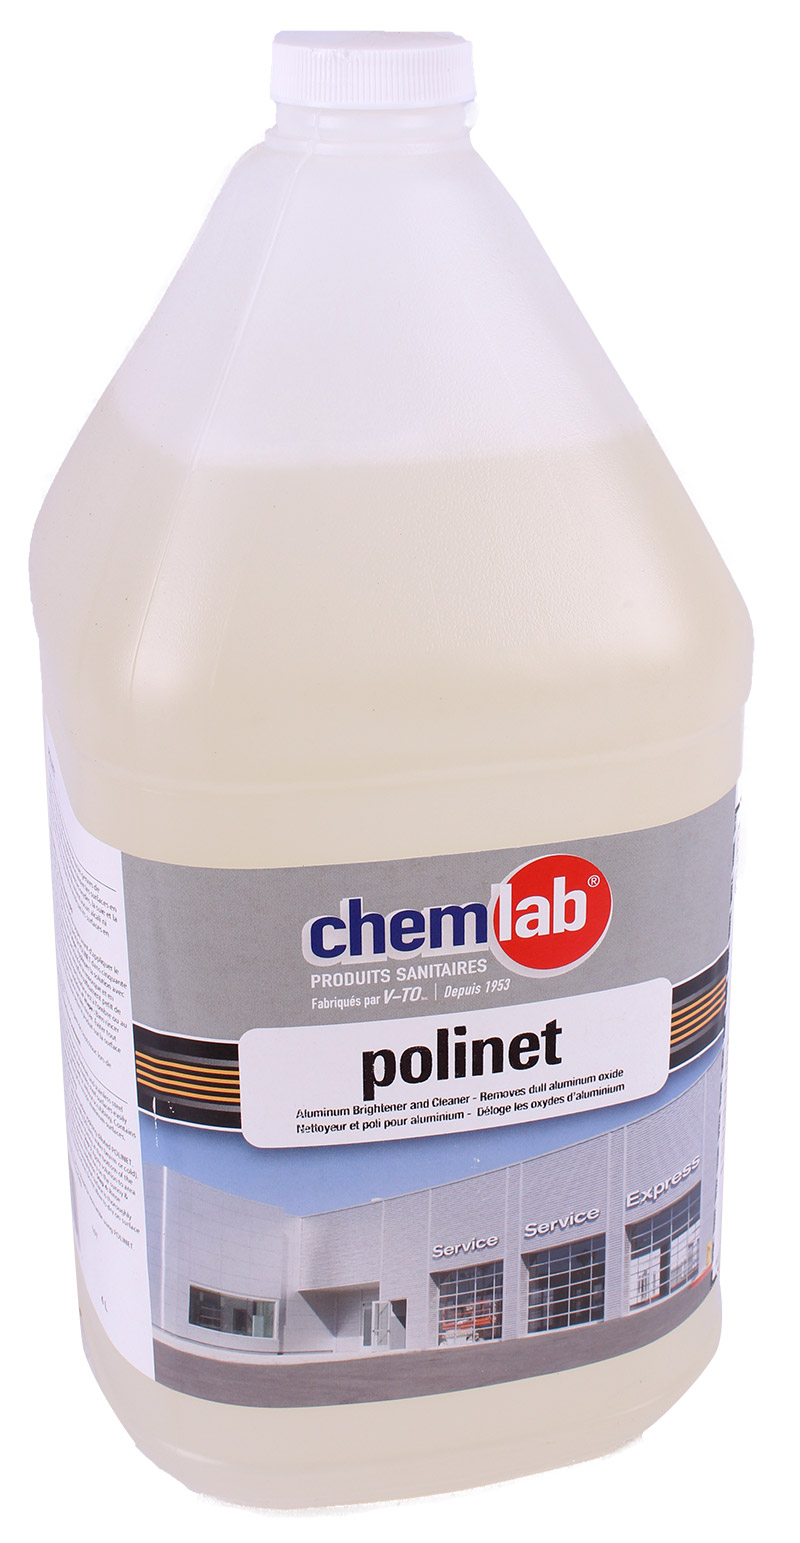 Polinet – Détergent non ionique pour aluminium et acier inoxydable